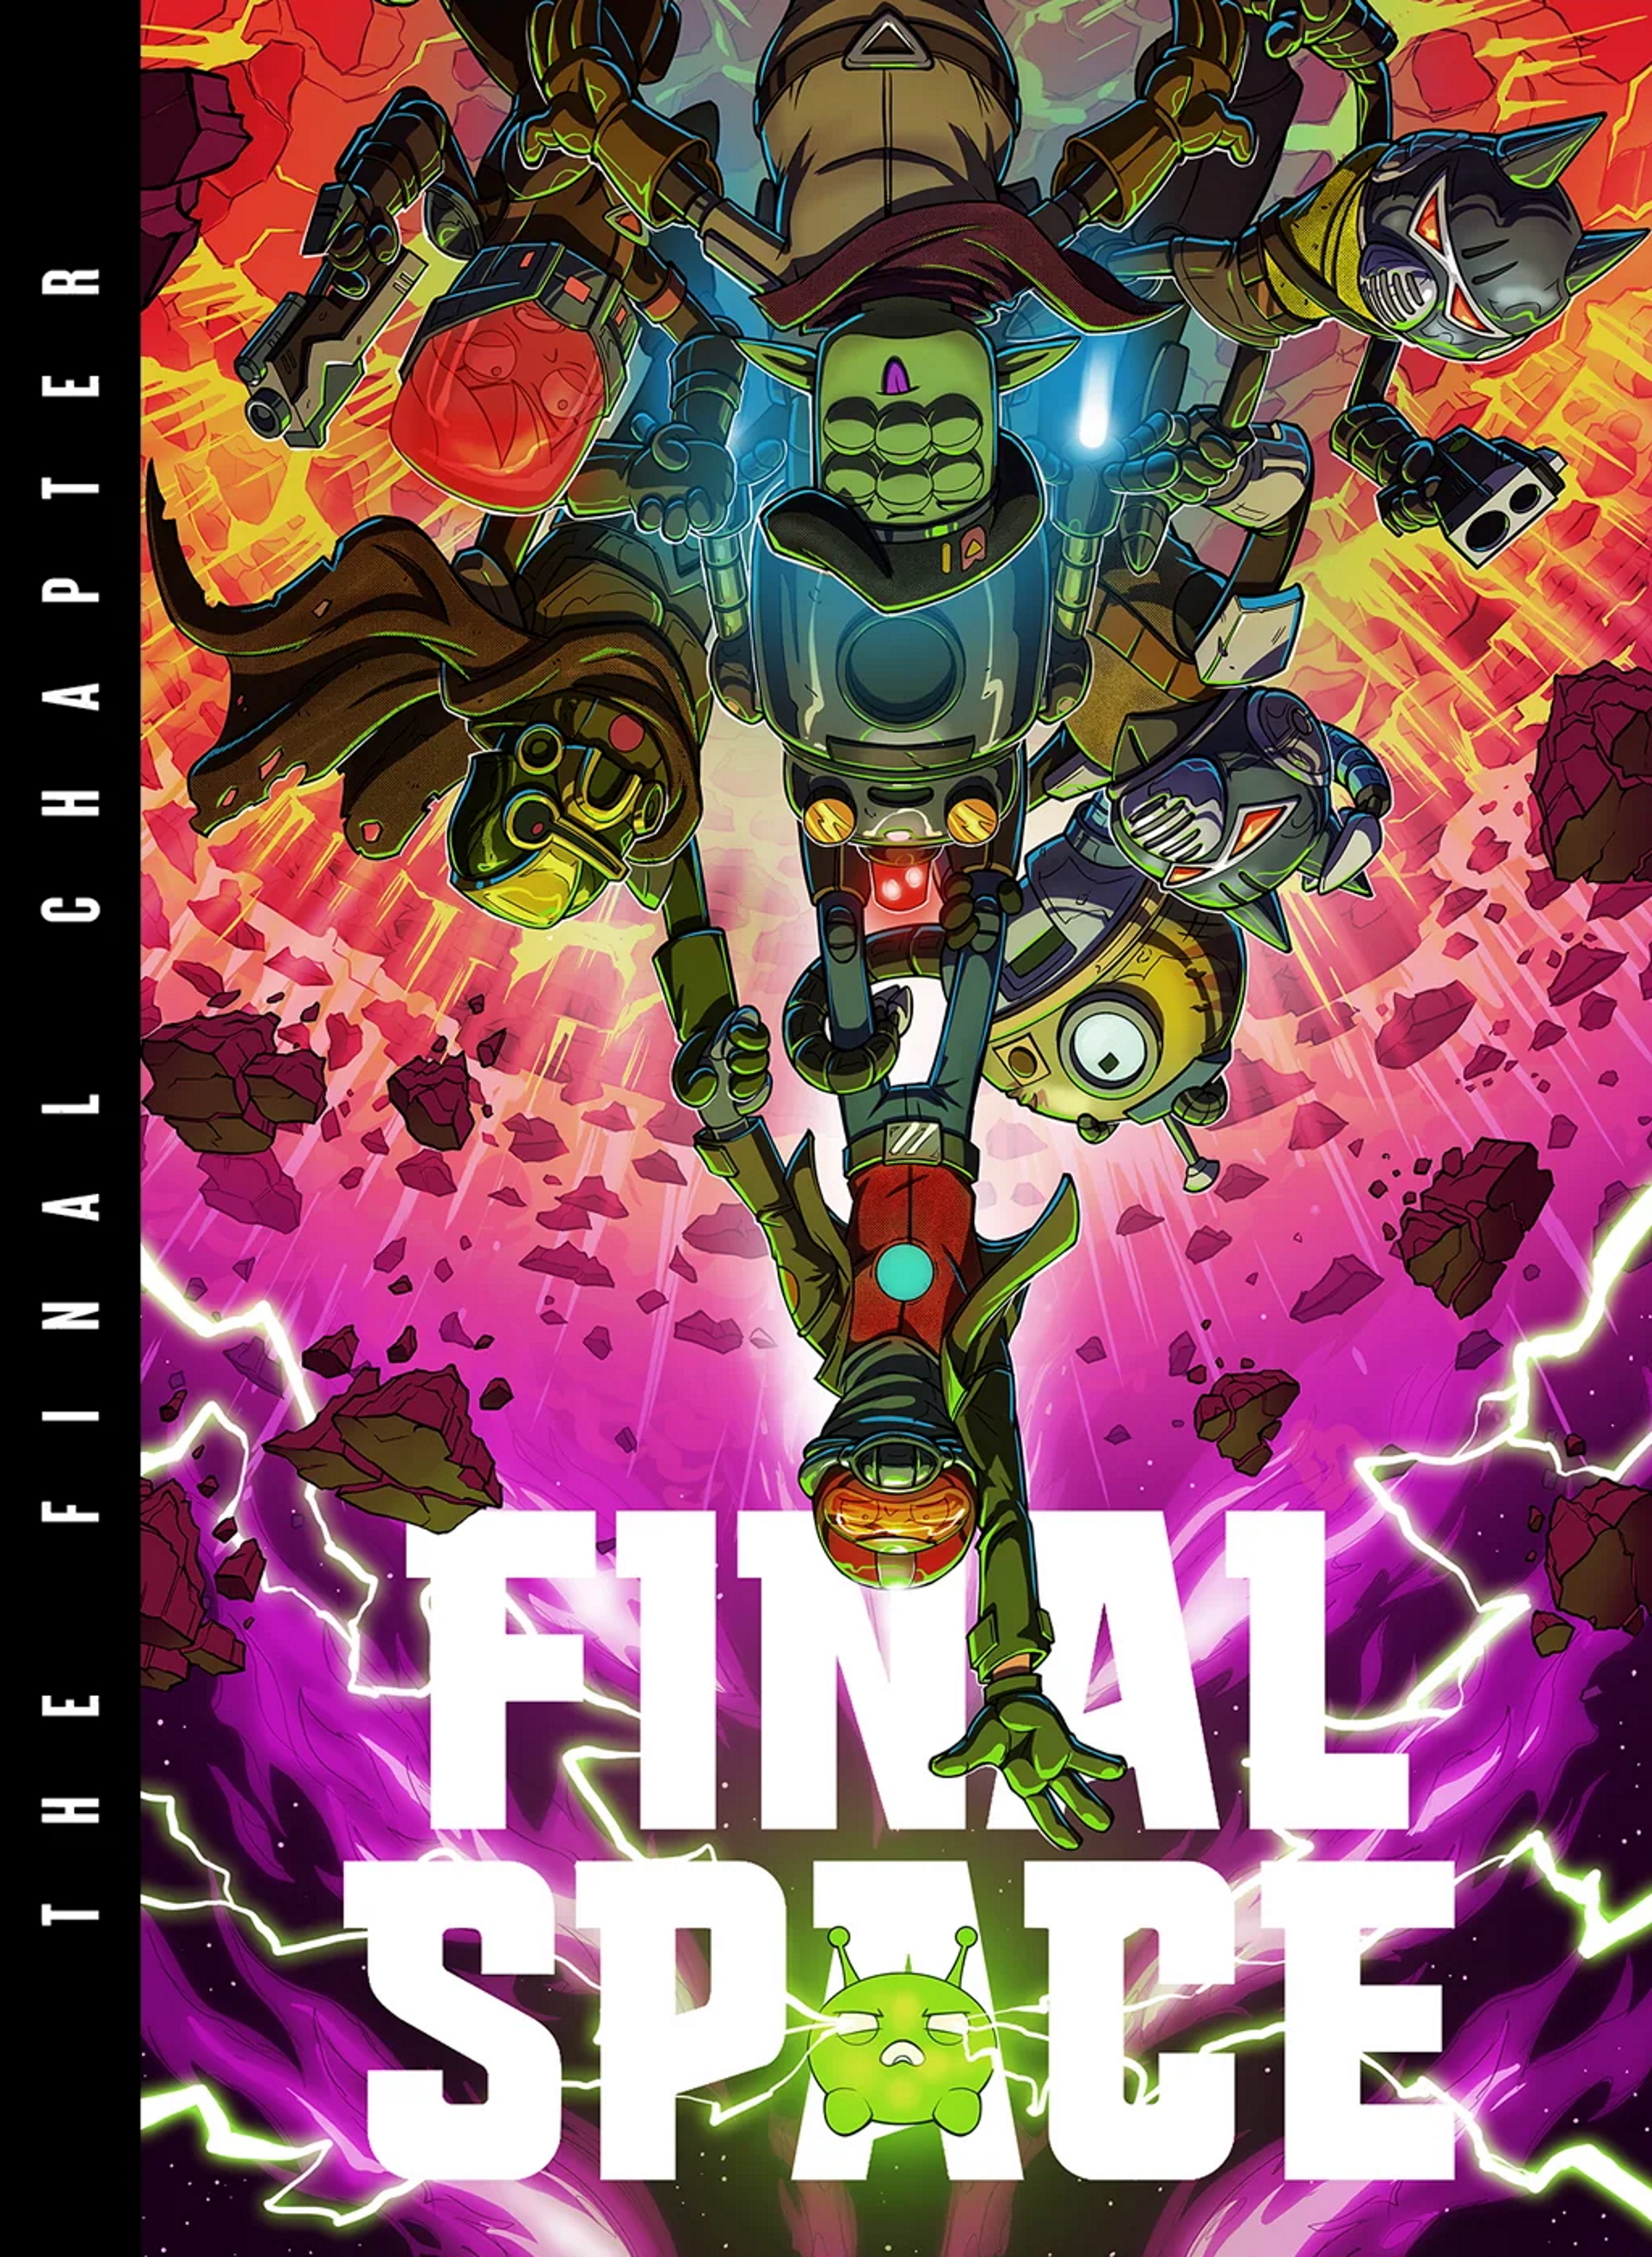 Das Cover von Final Space: The Final Chapter zeigt viele Charaktere aus der Serie.